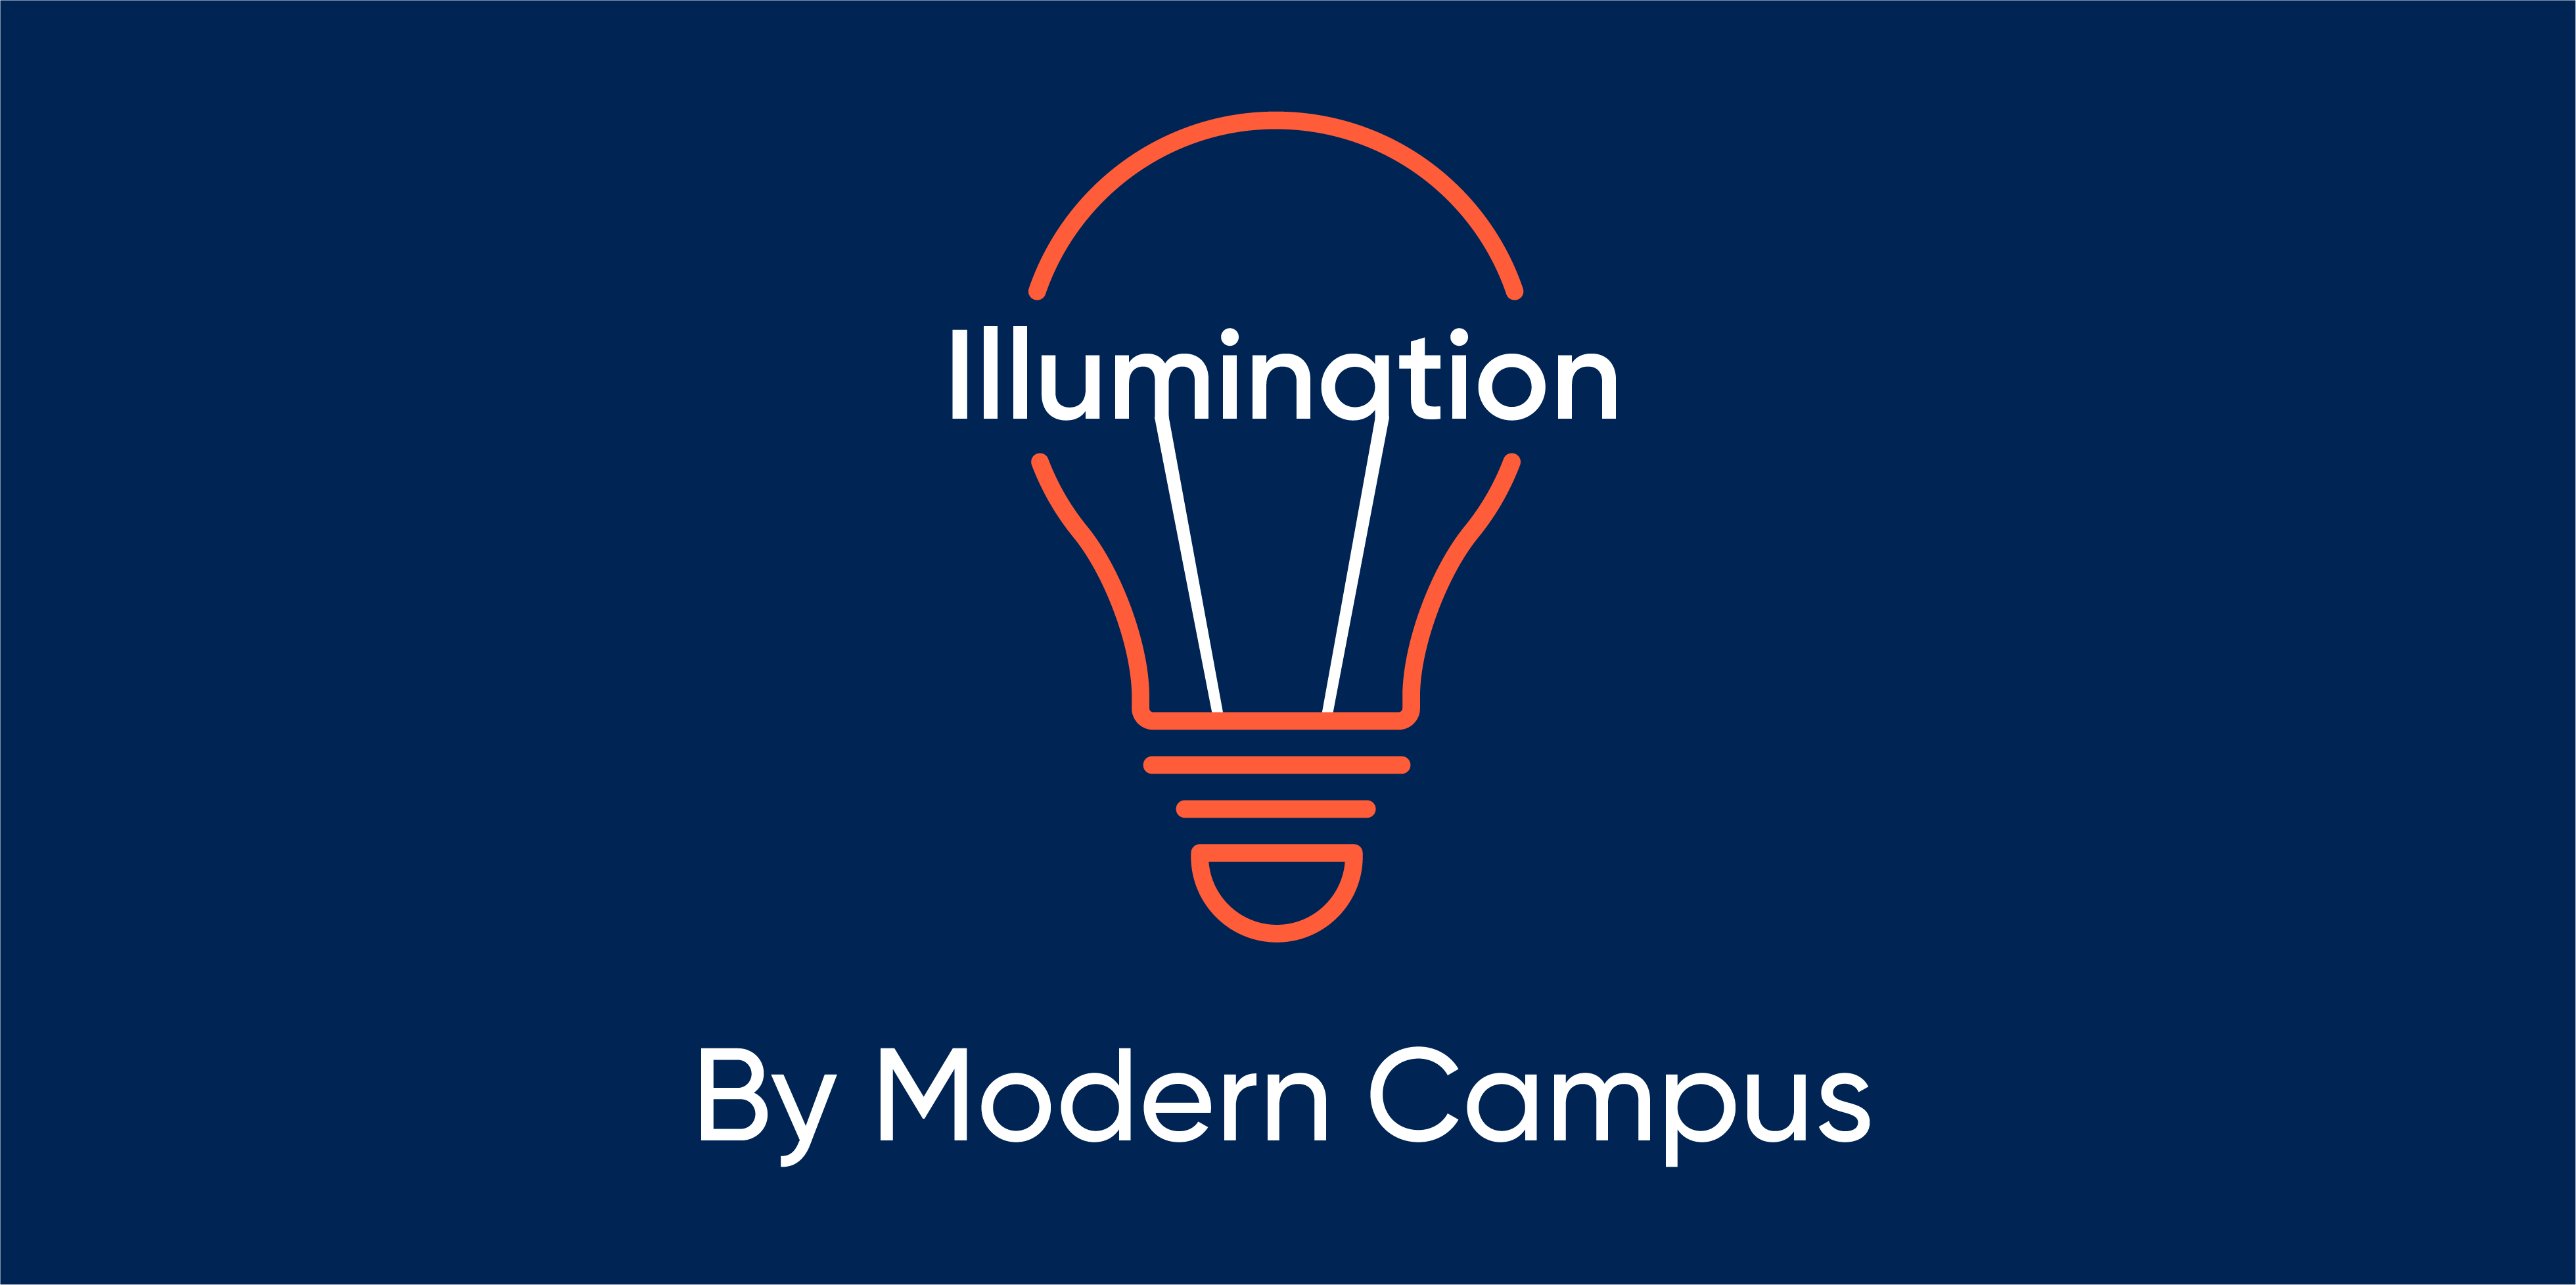 Episode 75: Illumination by Modern Campus